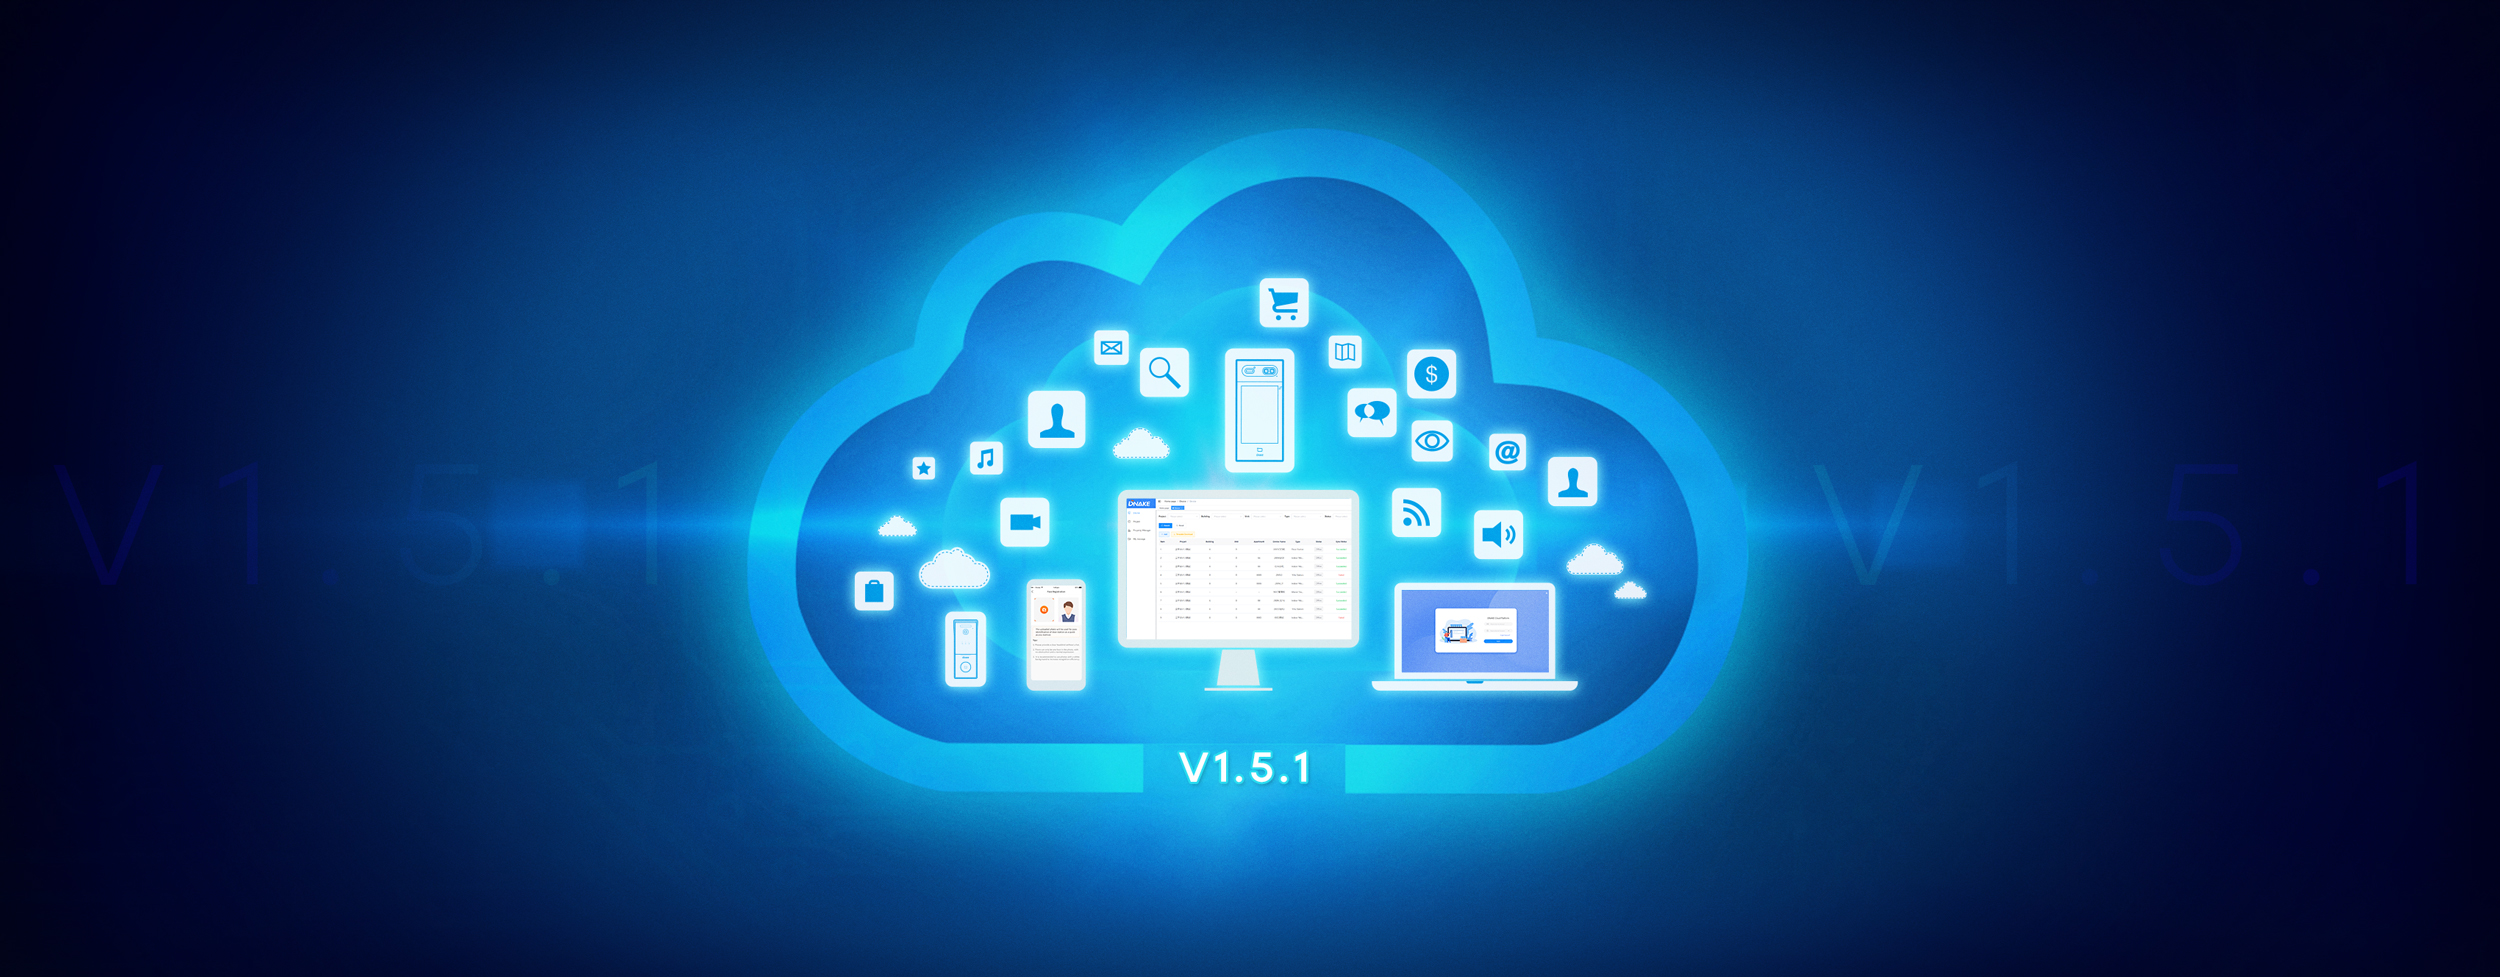 Cloud-Platform-V1.5.1 Banner